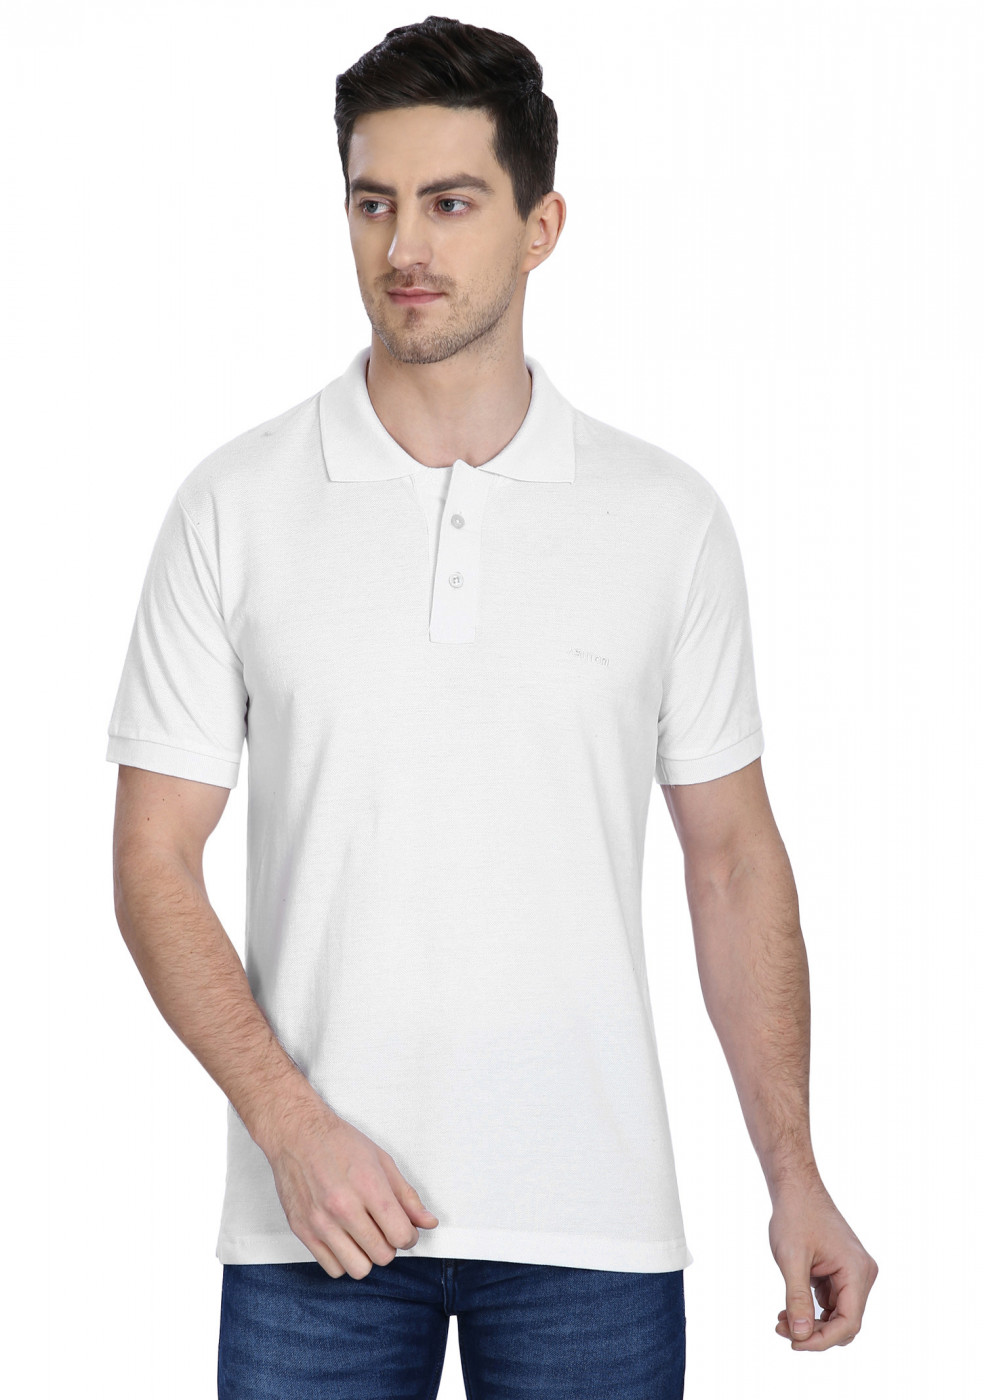 White Polo T Shirt For Men